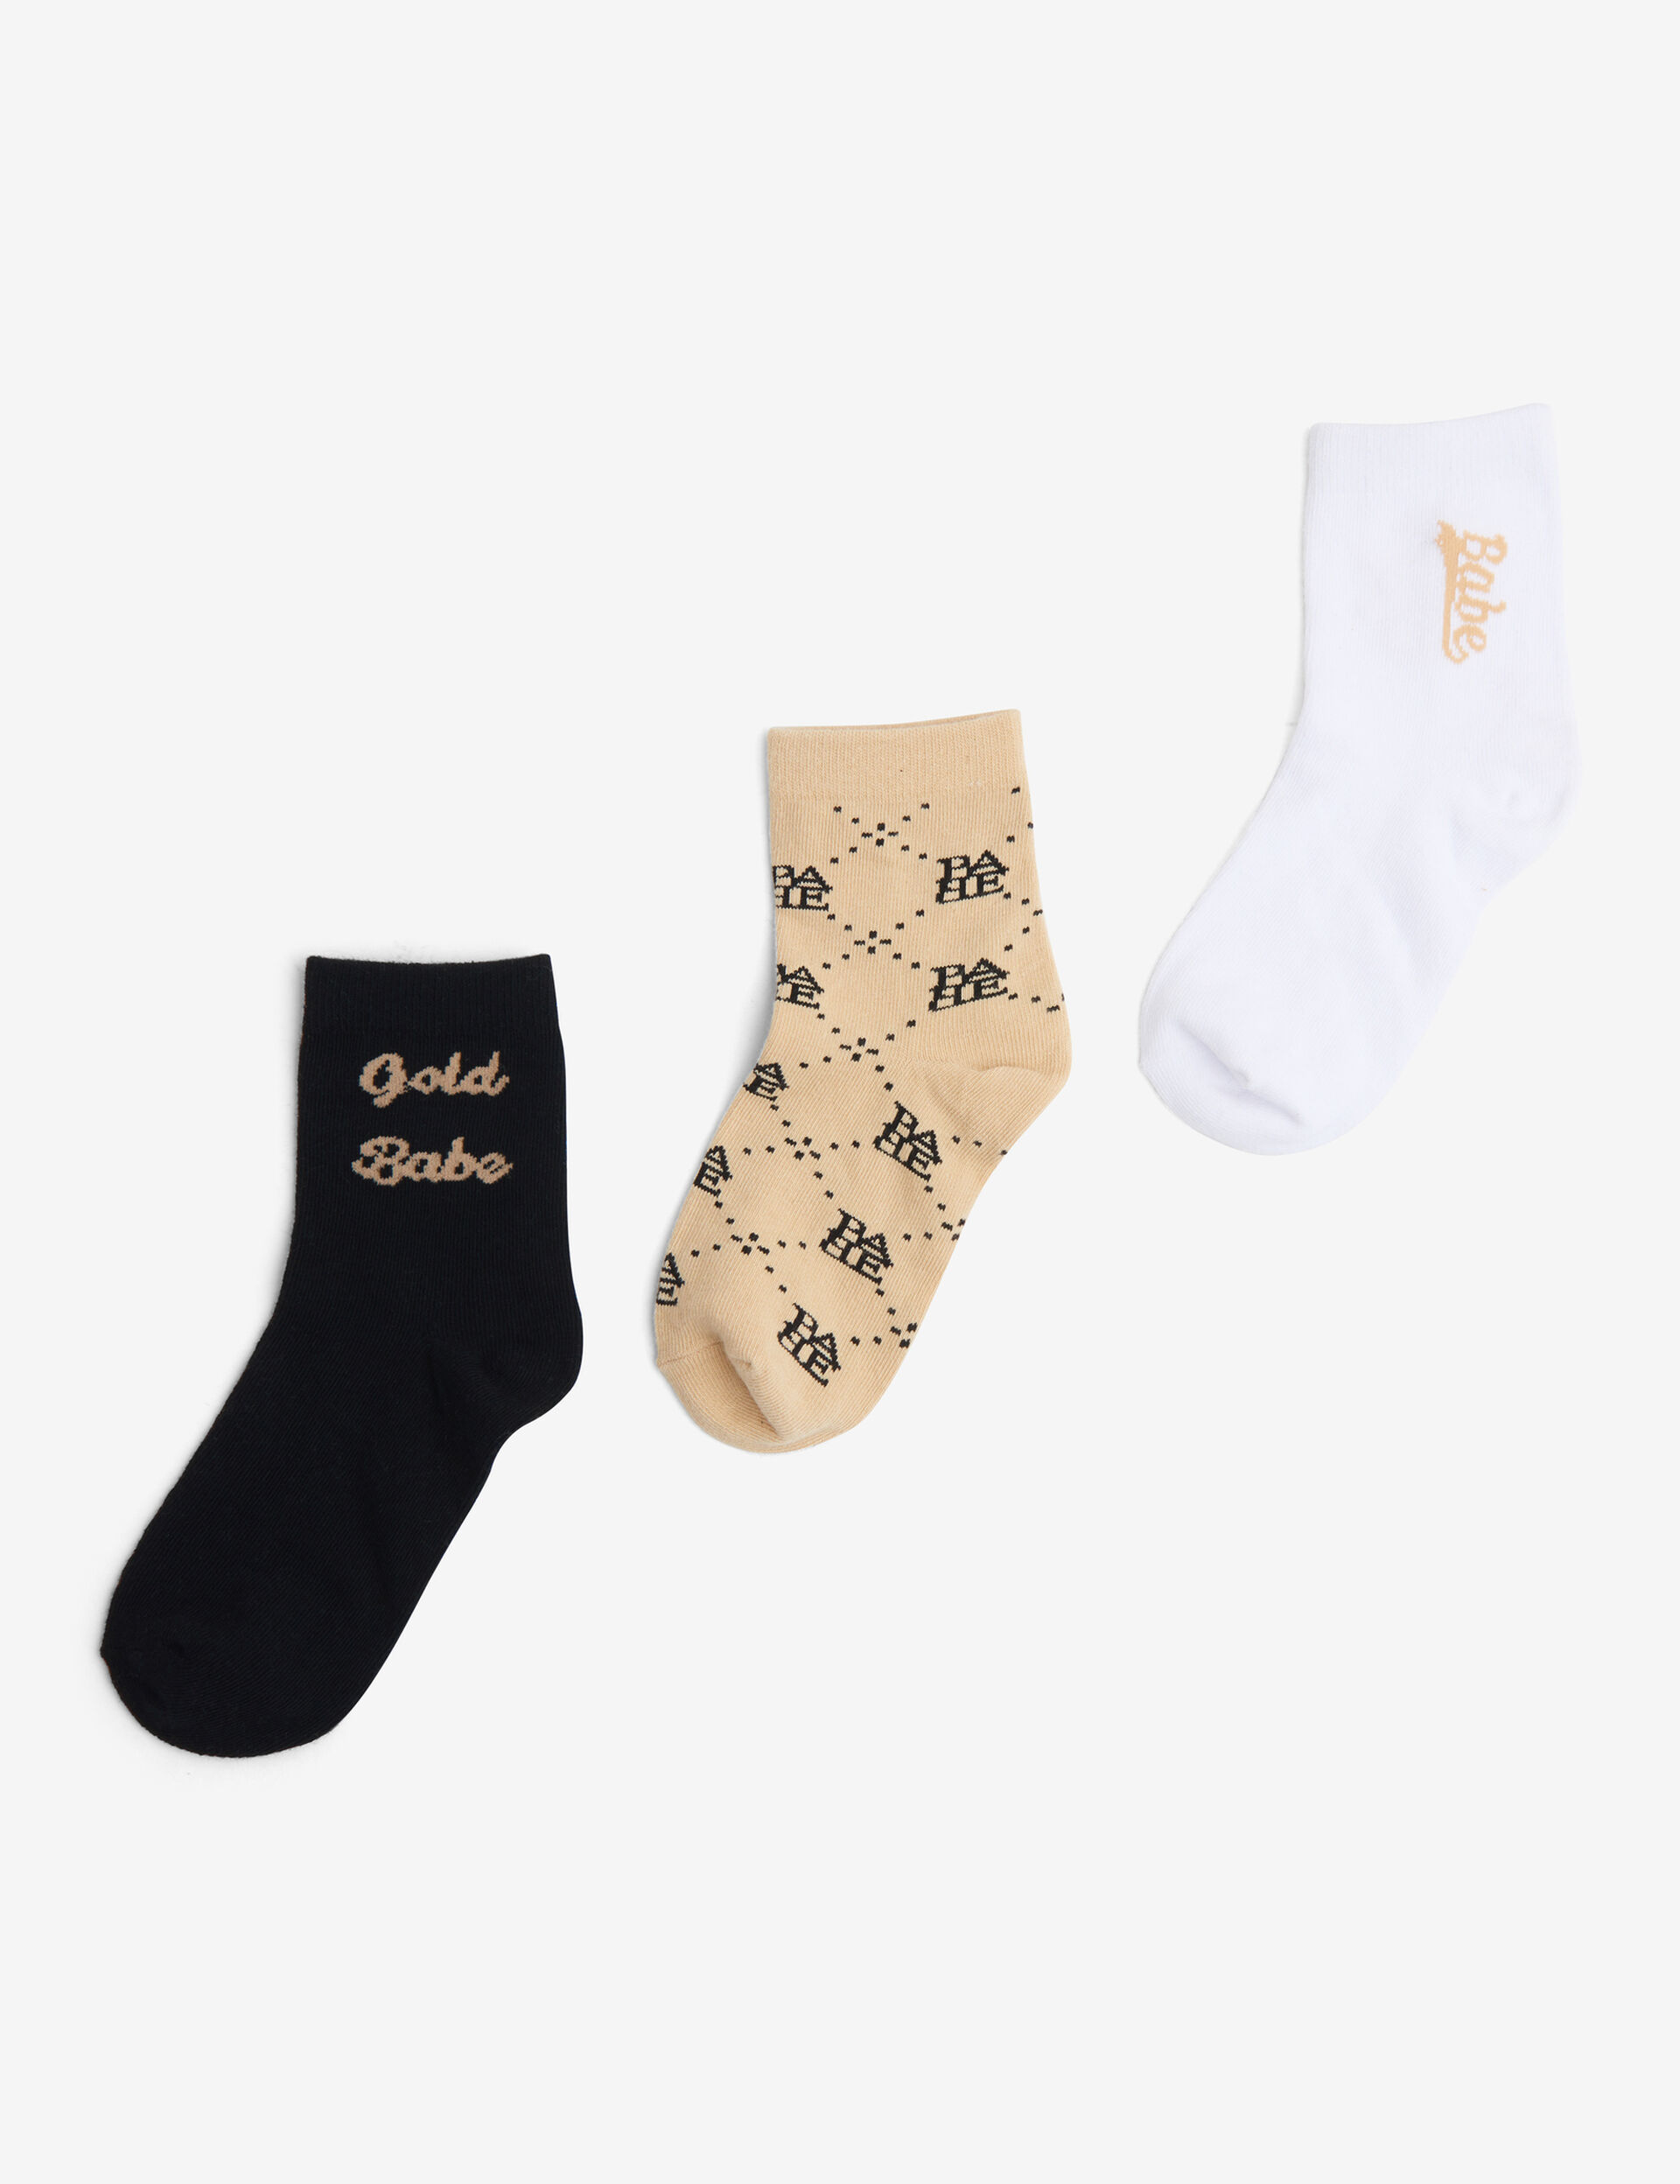 Babe socks 